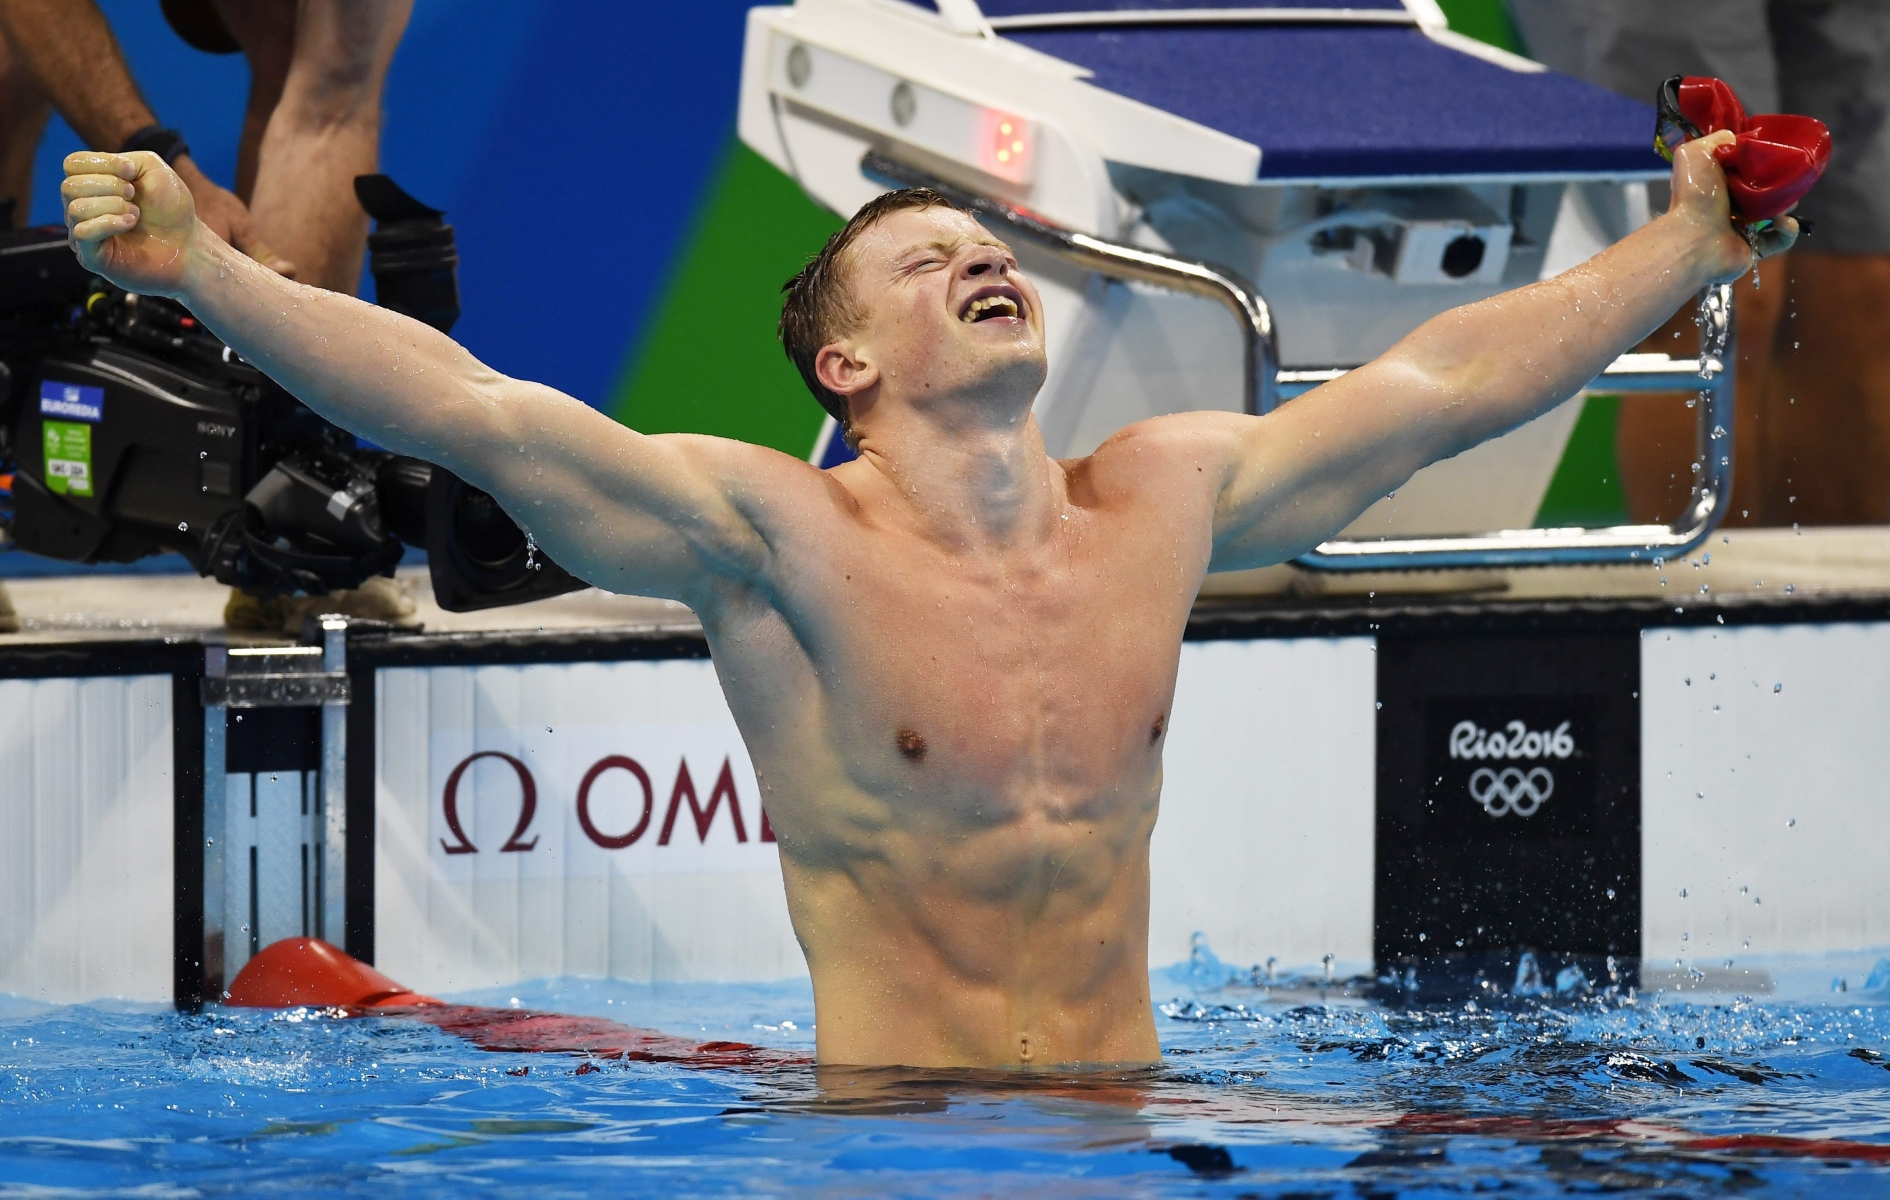 Le nageur britannique Adam Peaty, après son record du monde, les bras en croix.